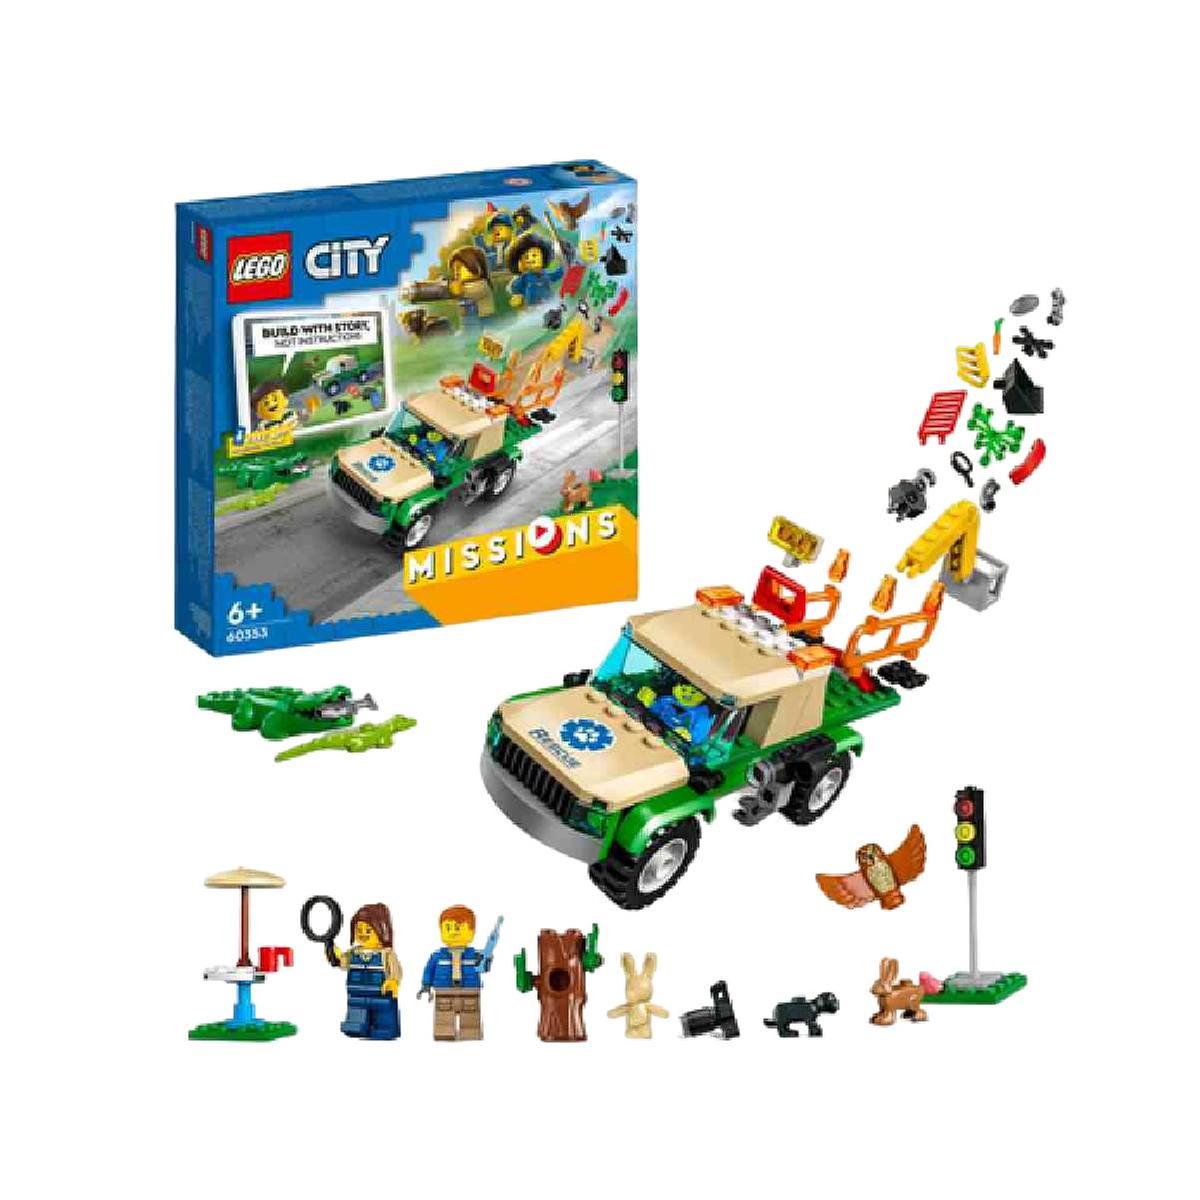 LEGO City - Missions: Resgate de Animais Selvagens - 60353 | LEGO CITY |  Loja de brinquedos e videojogos Online Toysrus